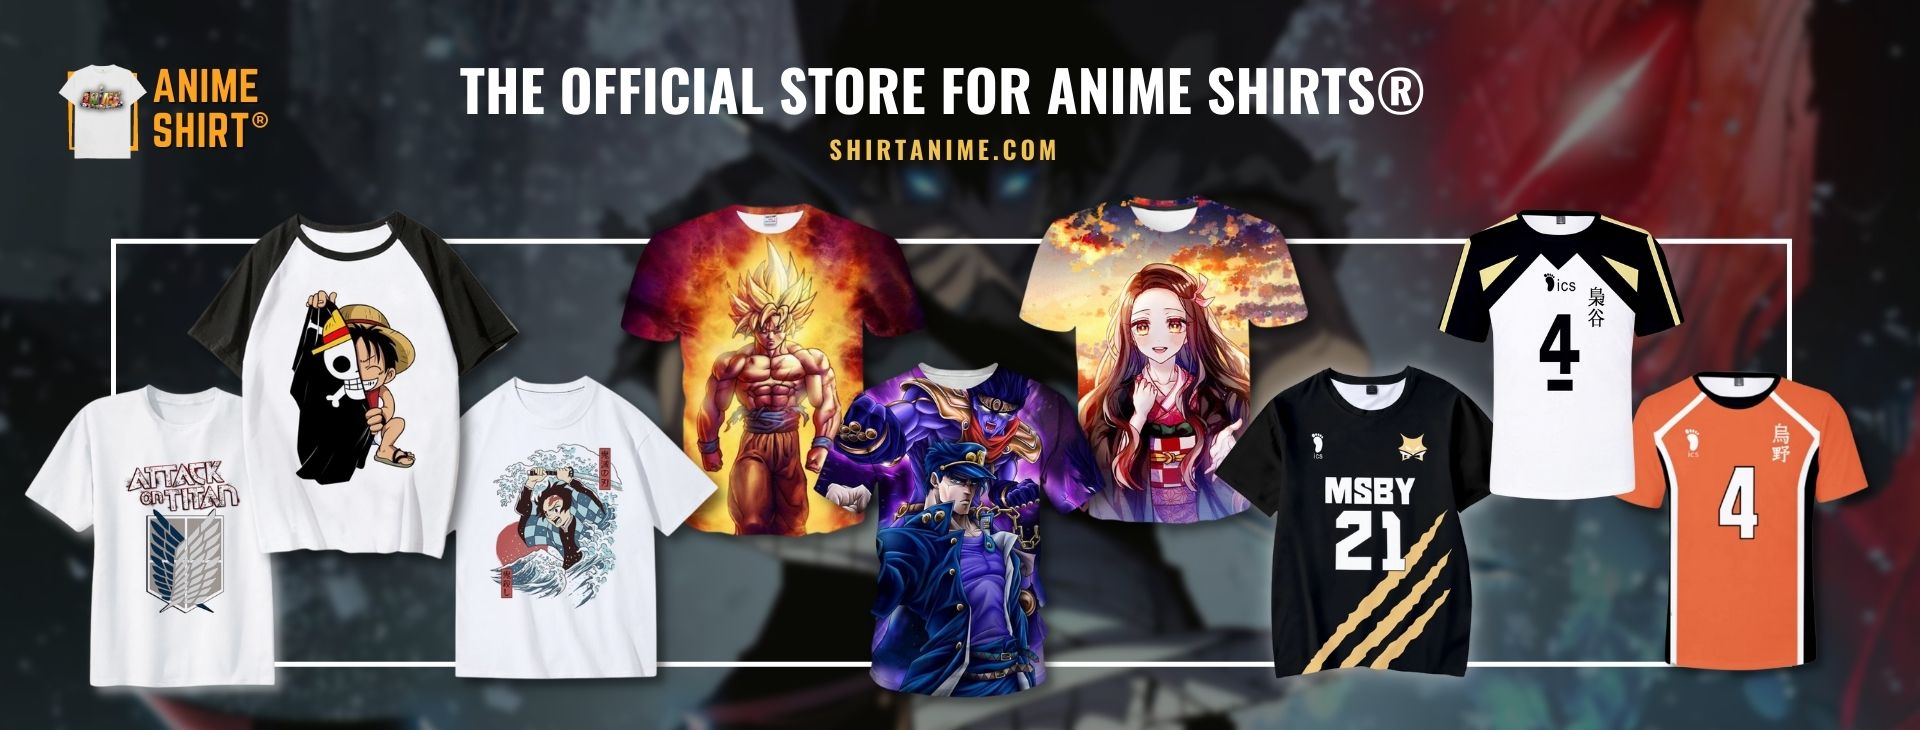 Anime Shirt Web Banner - Shirt Anime™